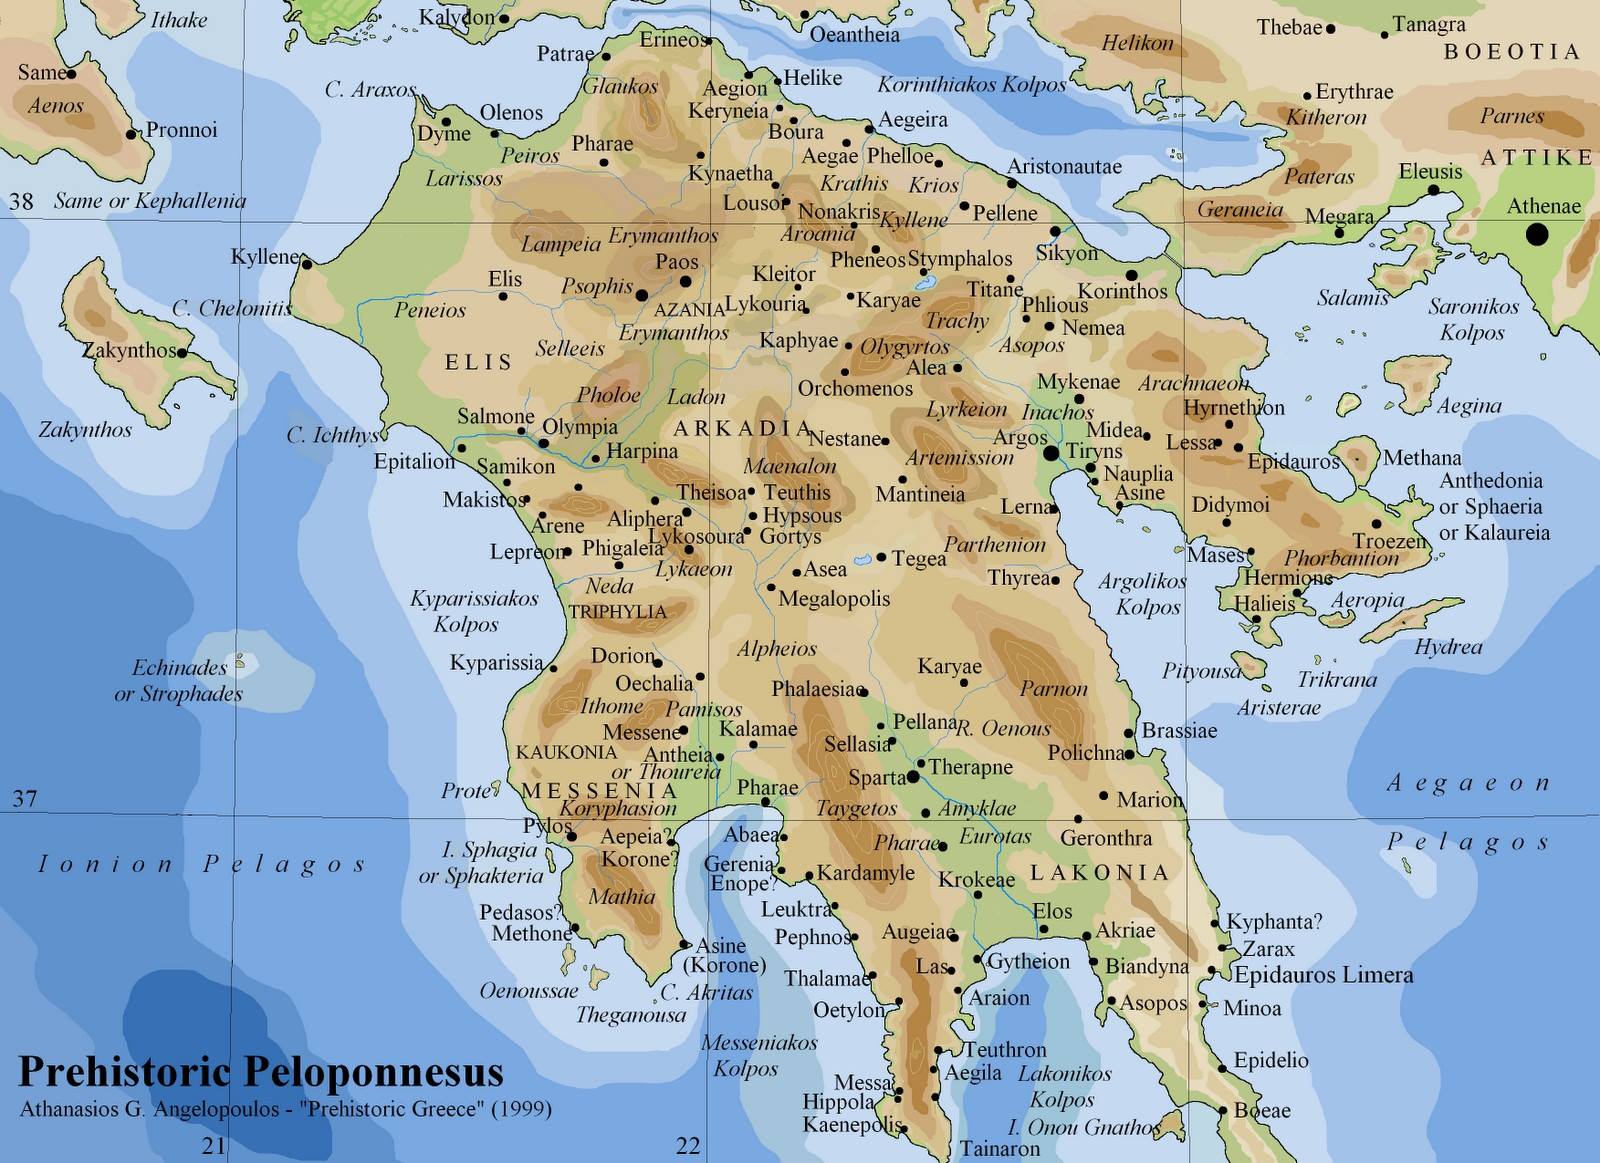 https://vignette.wikia.nocookie.net/science/images/3/3e/Maps-Peloponnesus-00-goog.jpg/revision/latest?cb=20150911143812&path-prefix=el